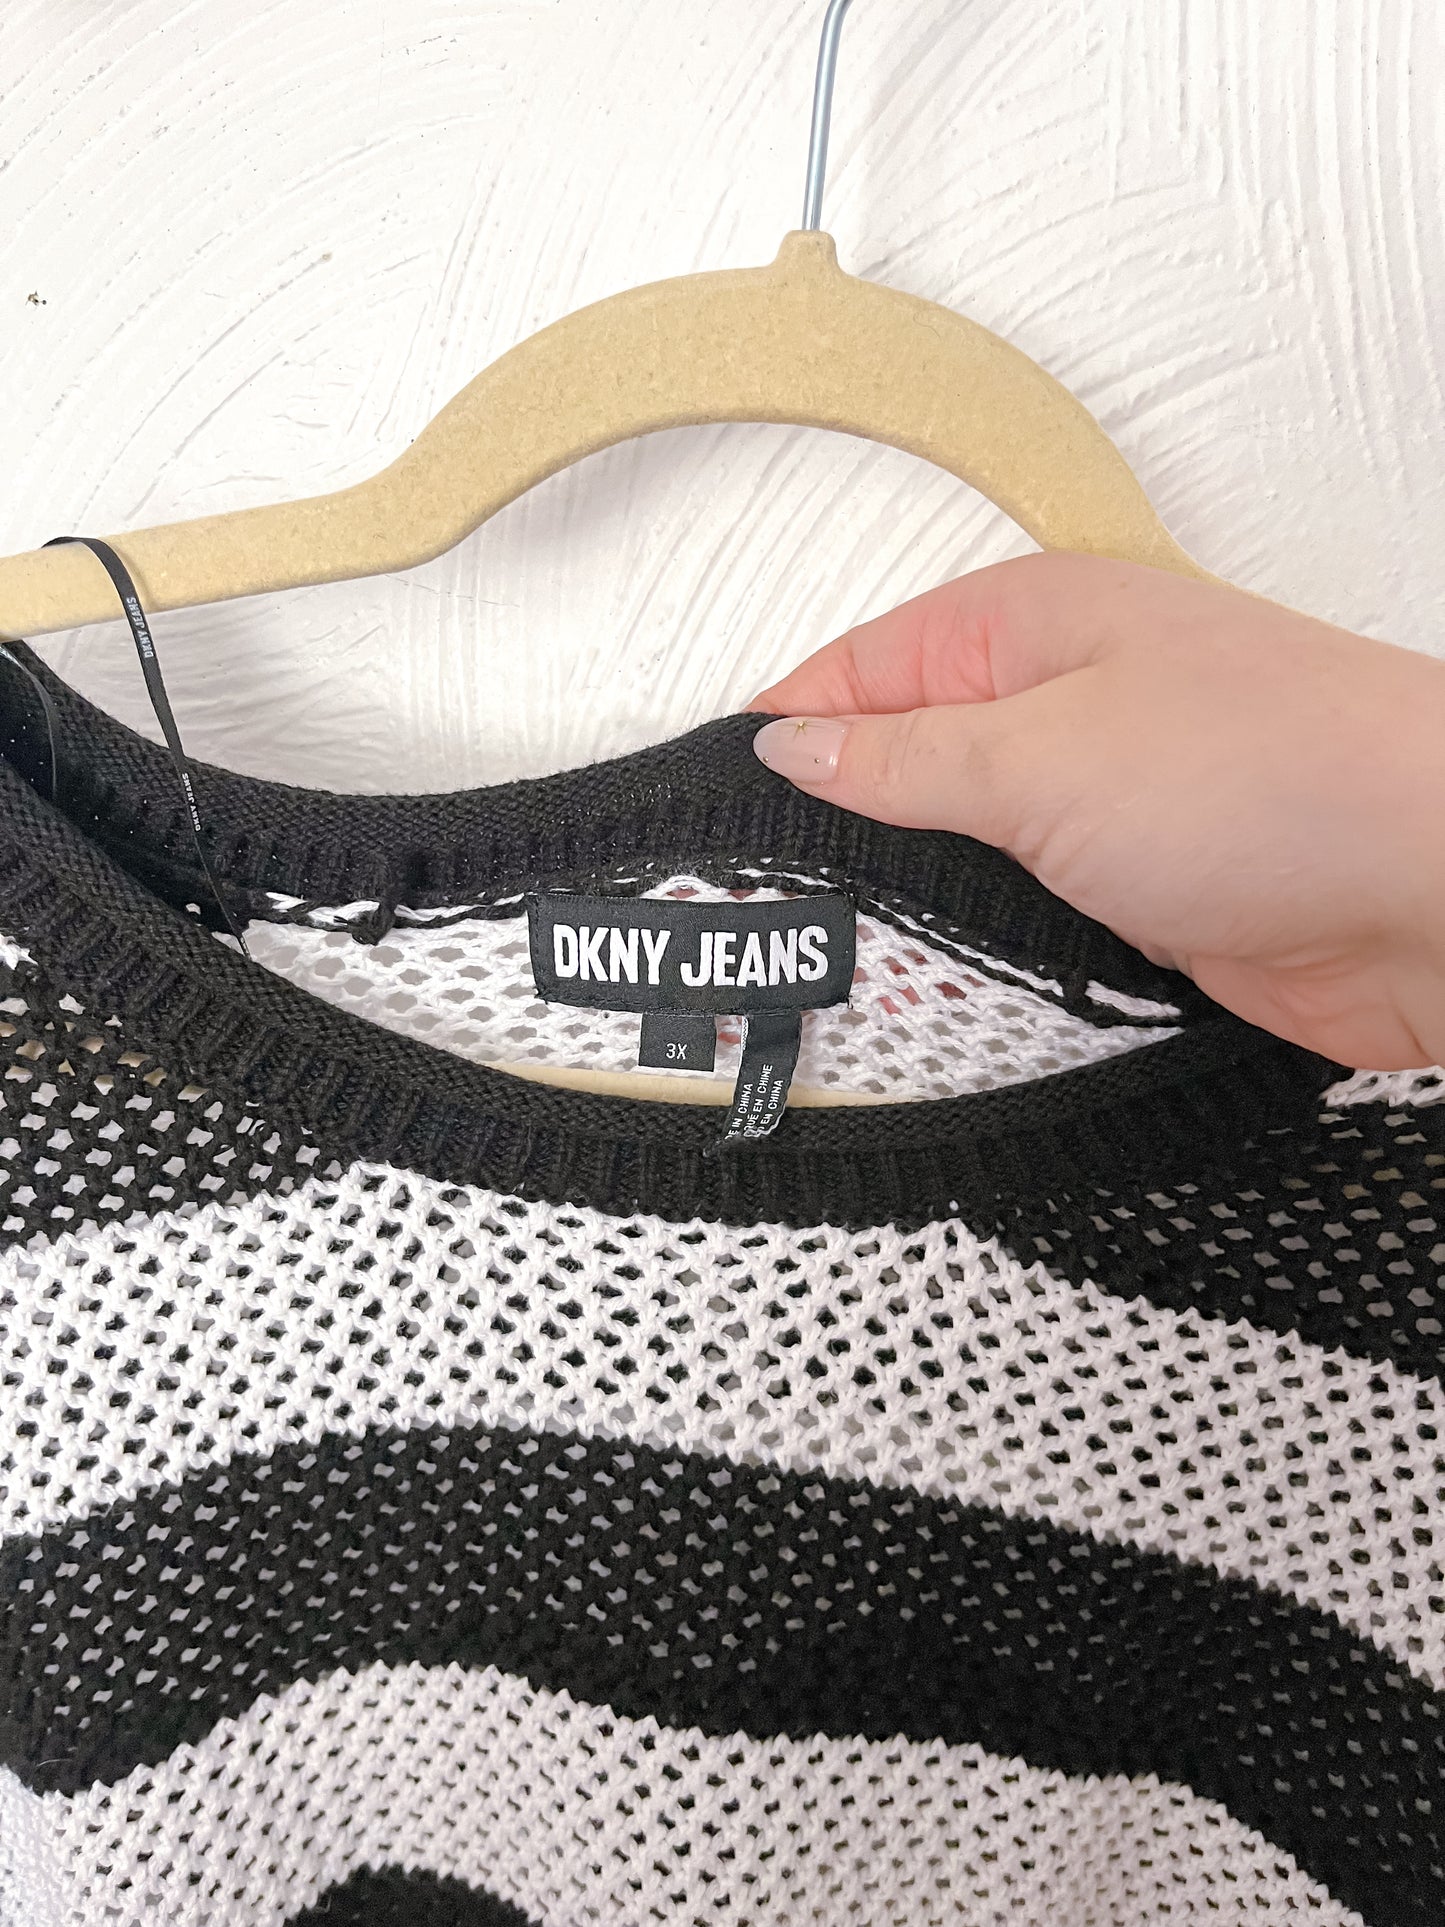 DKNY Open Knit Sweater (3X)